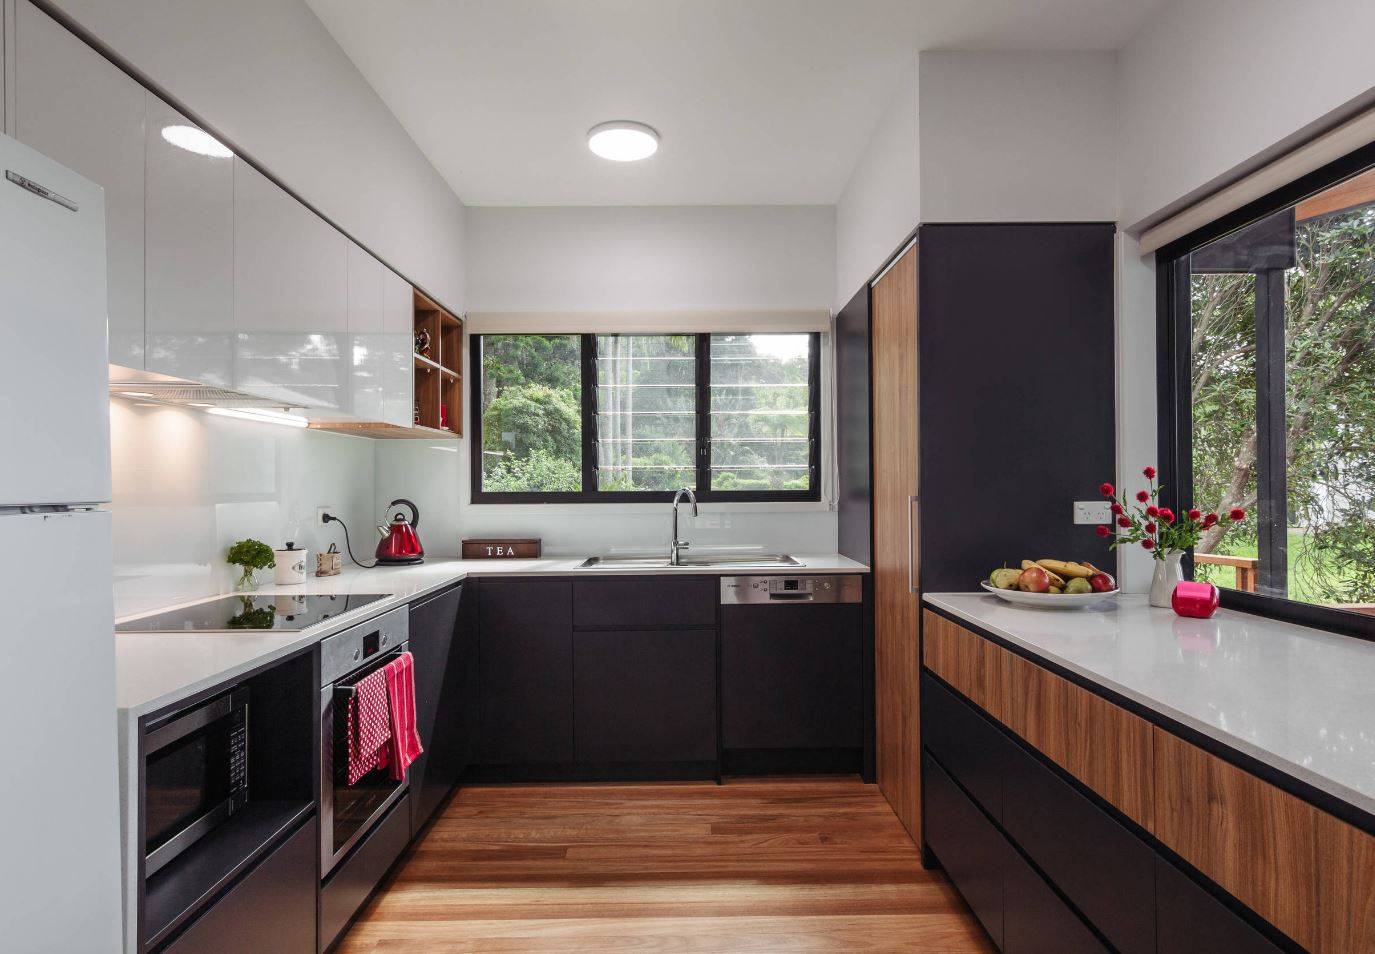 Дизайн кухни 6 кв м - фото новинки 2019 года